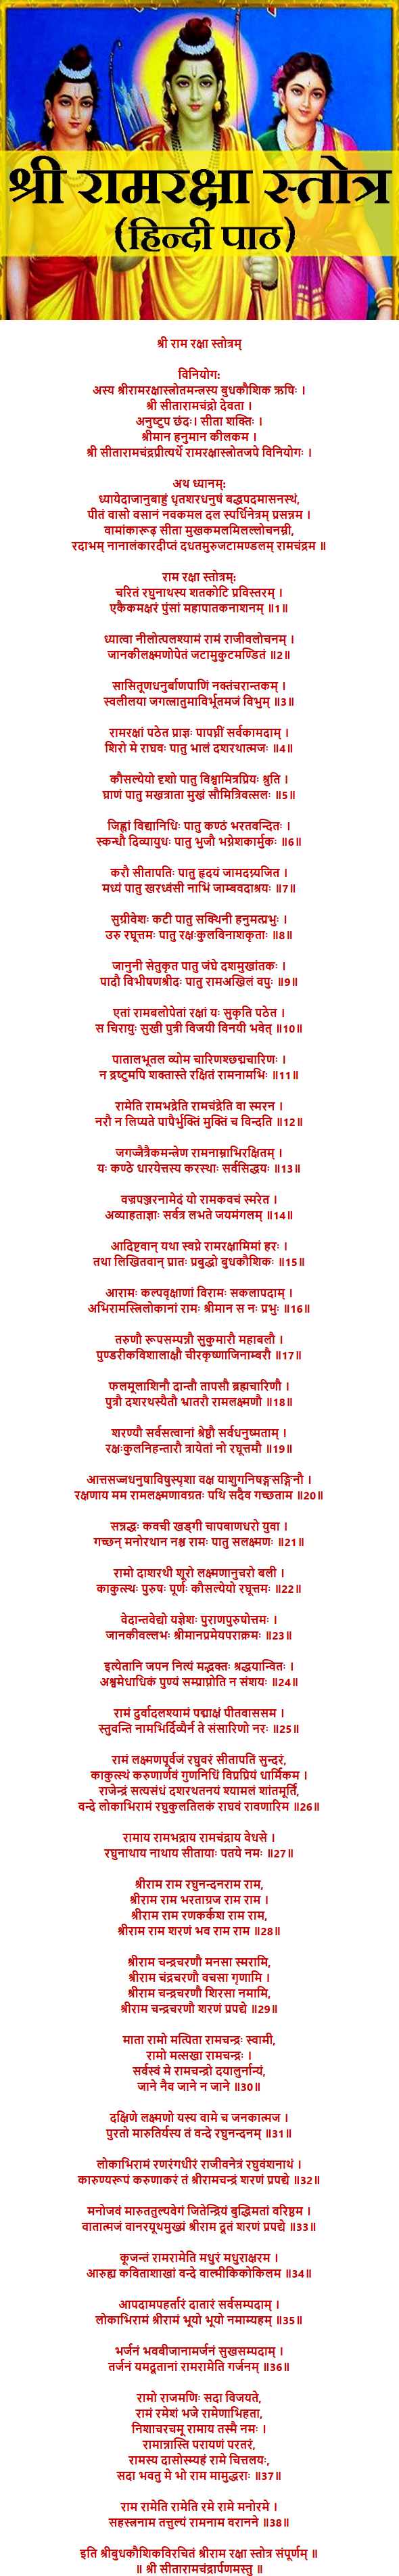 Ram Raksha Stotra In Hindi